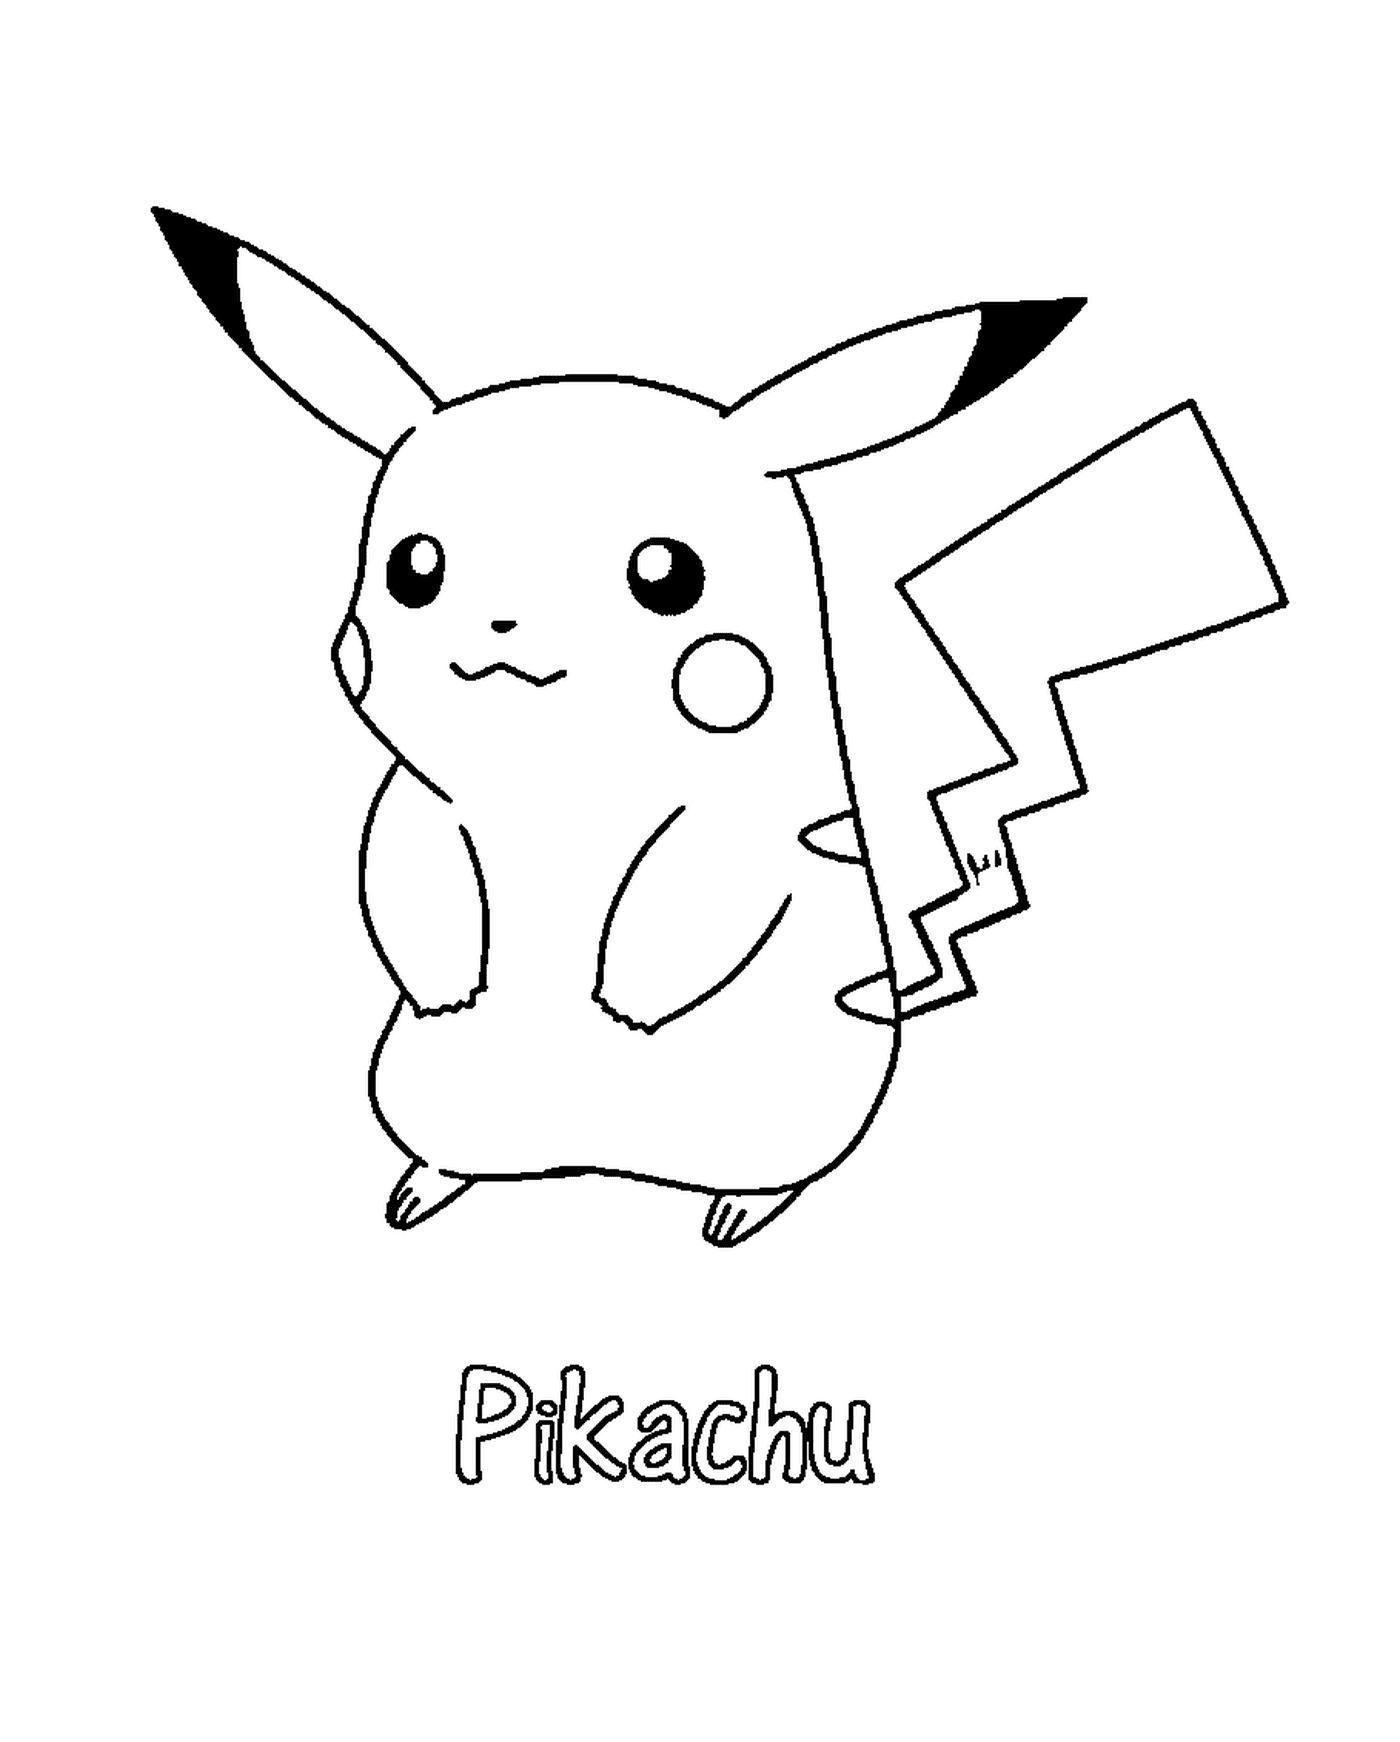  Pikachu com uma expressão alegre 